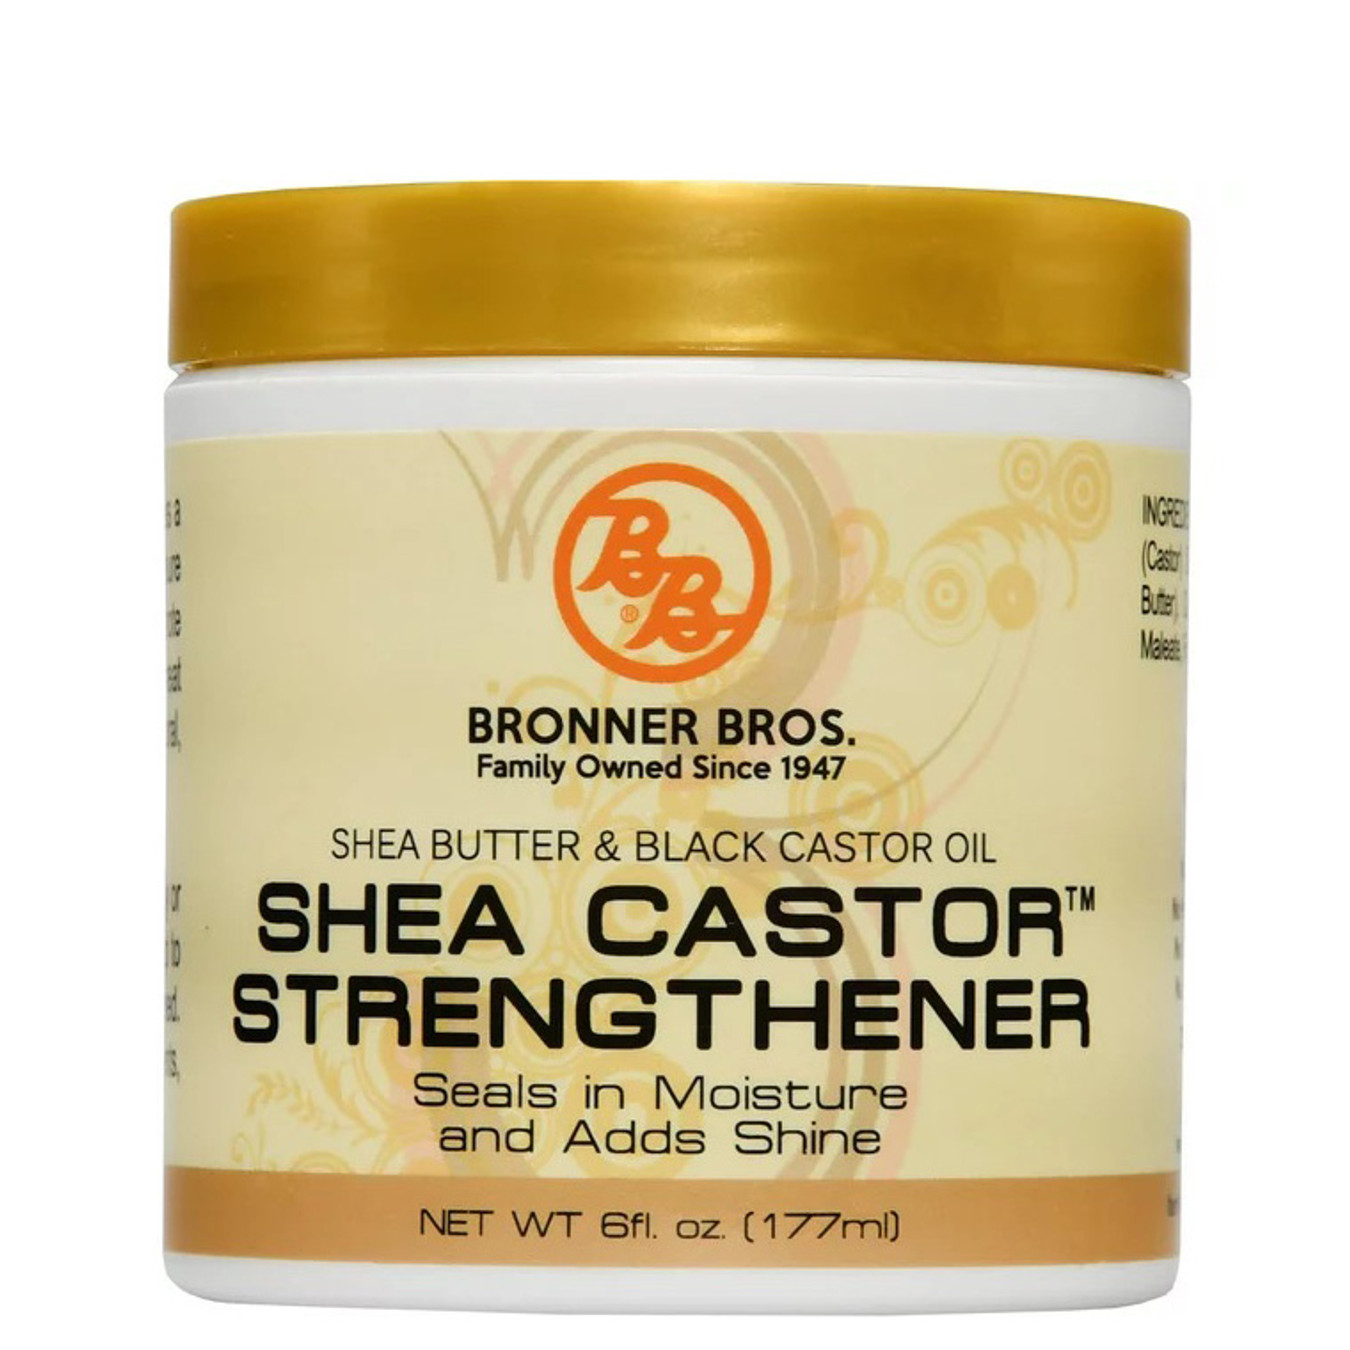 BRONNER BROS Shea Butter & Black Castor Oil Shea Castor Strengthener (6 oz)